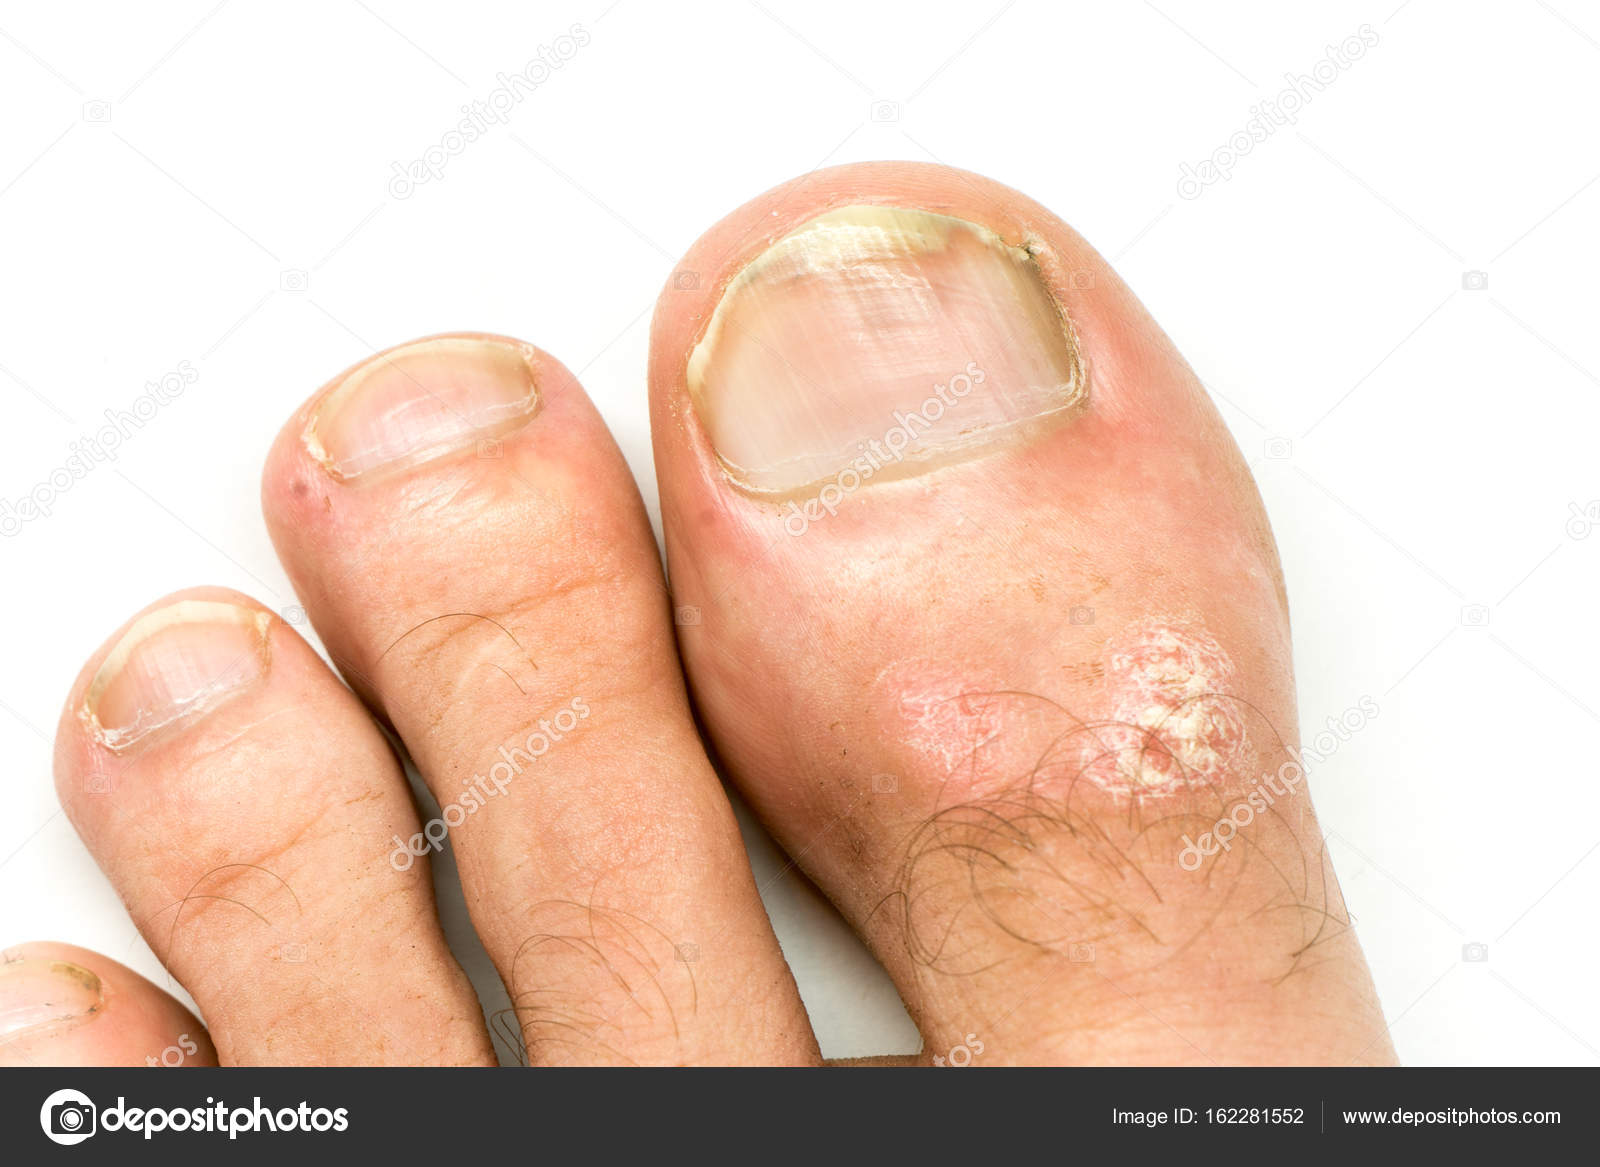 gomba skin hands nail foot a körömgomba pszichés oka